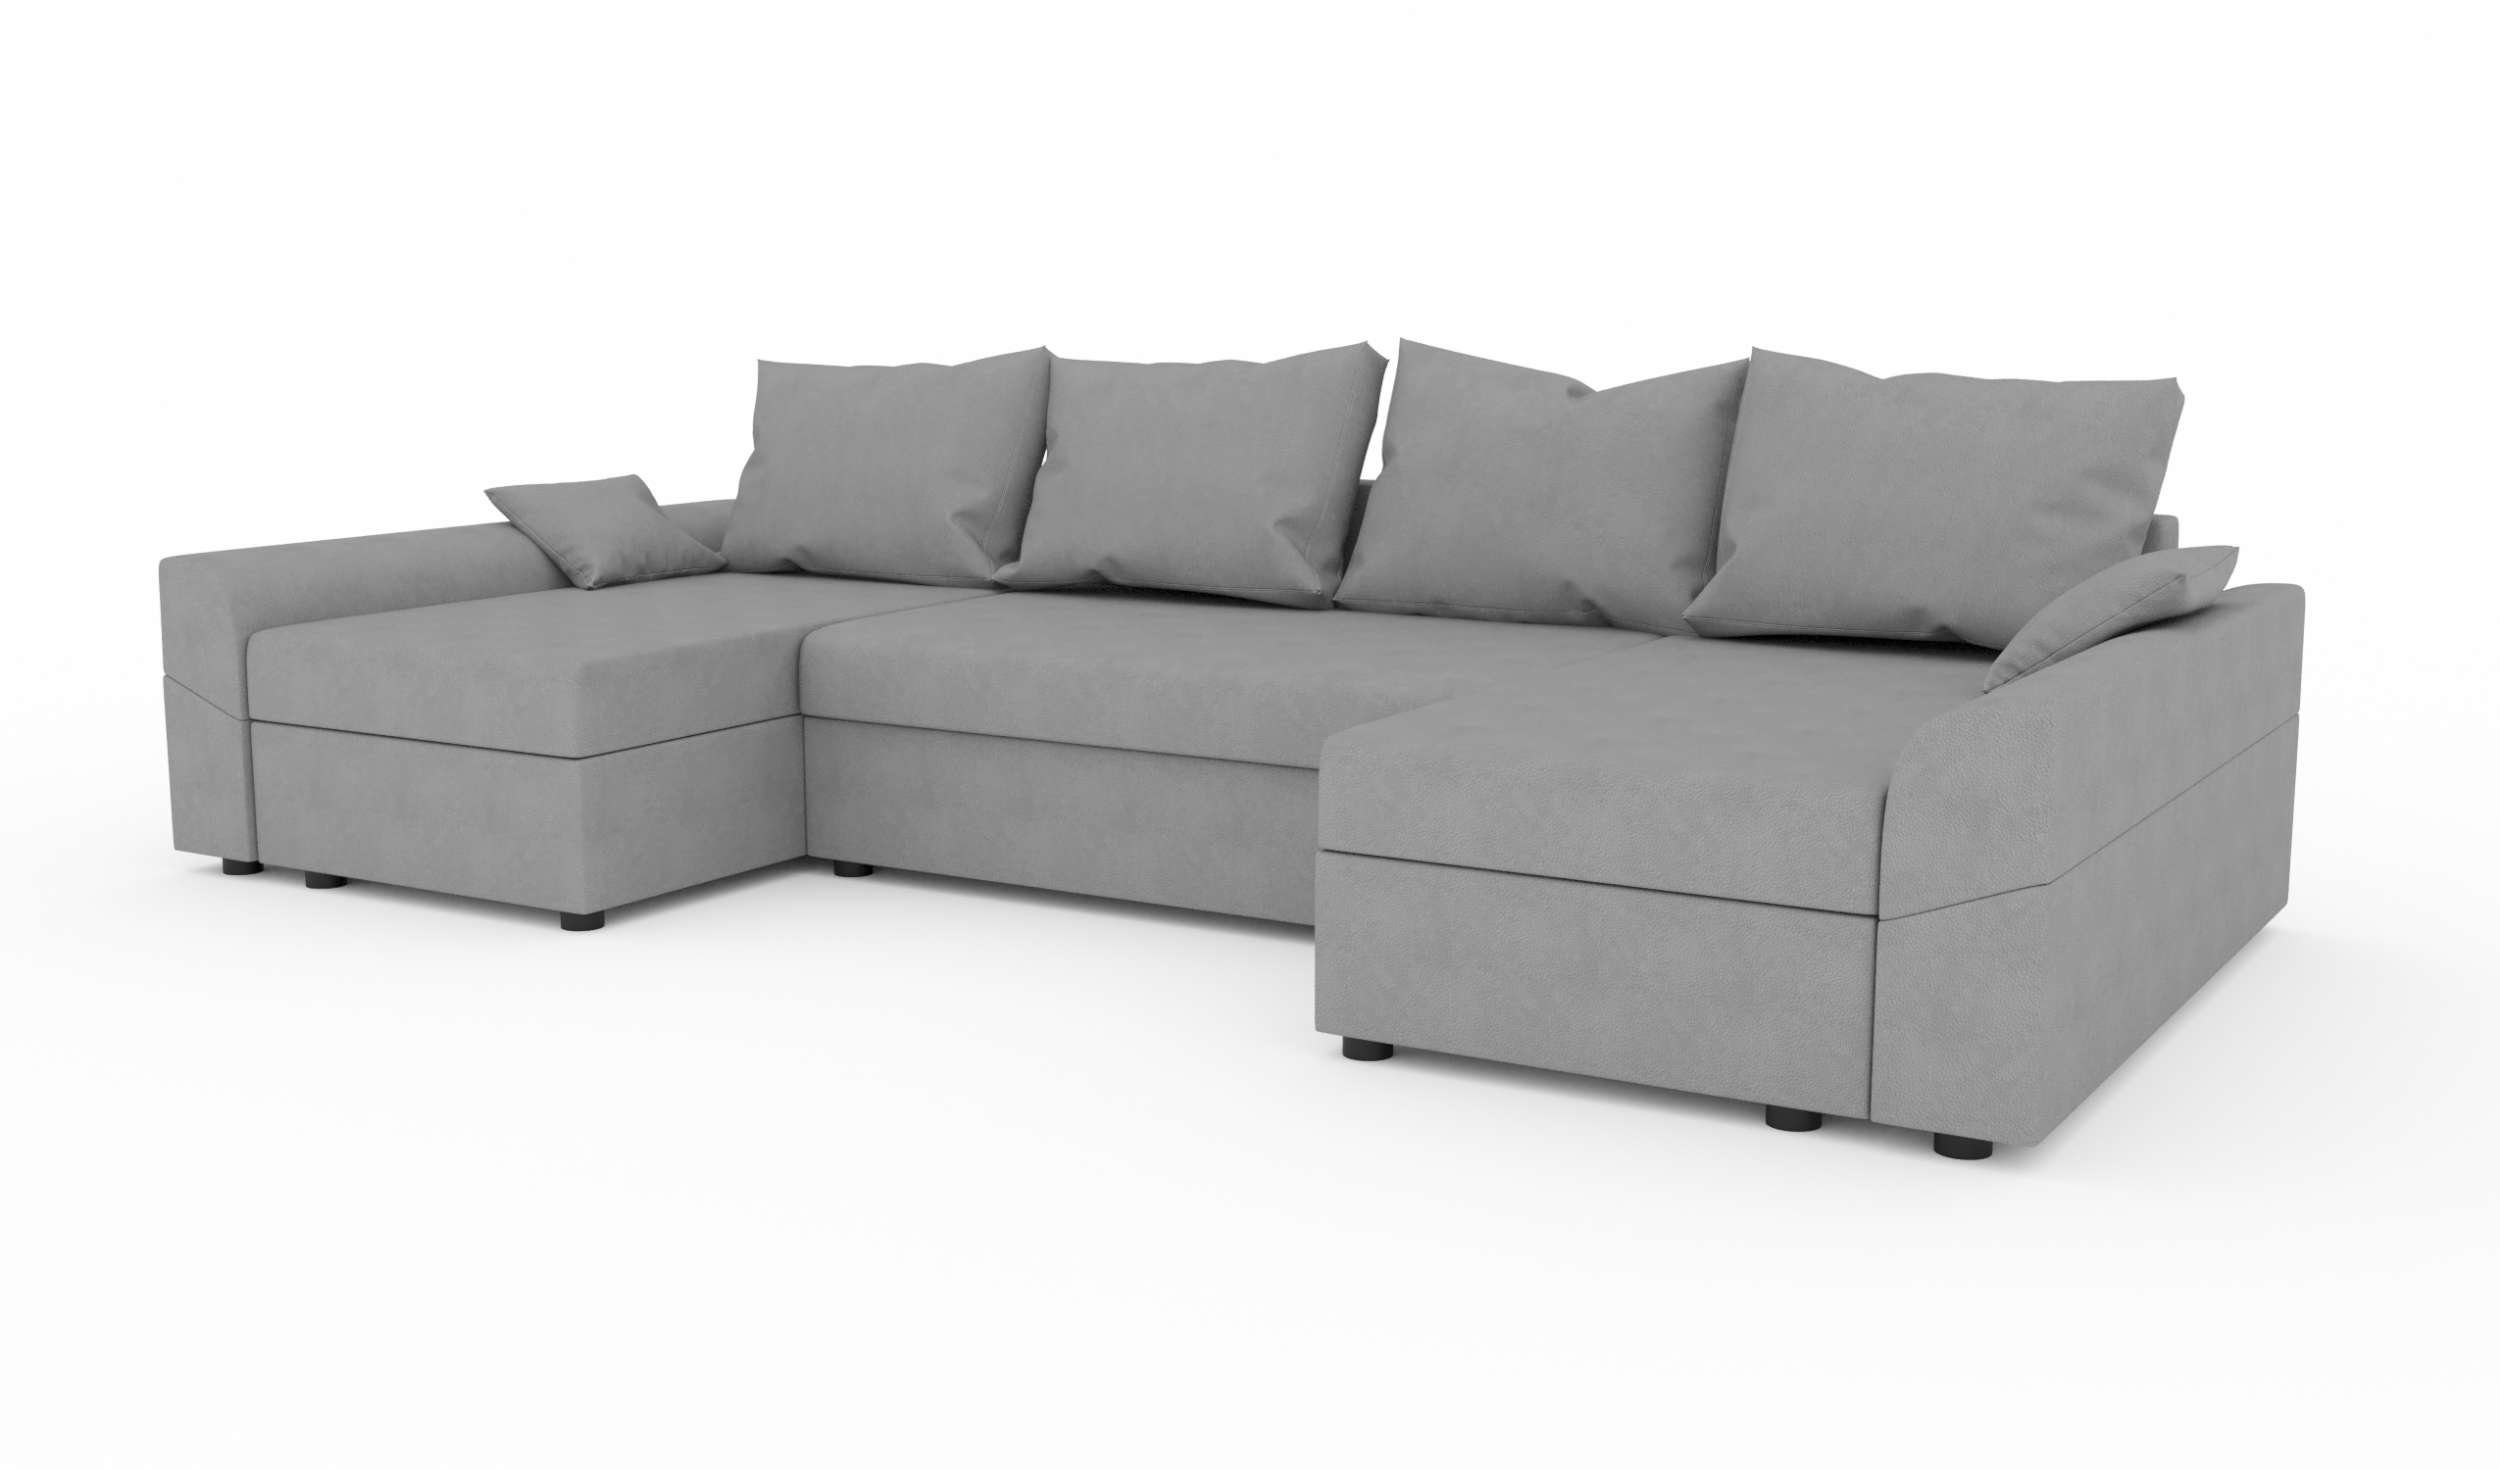 Eckcouch, U-Form, mit Wohnlandschaft Carolina, Bettkasten, Sitzkomfort, Stylefy Modern mit Sofa, Bettfunktion, Design